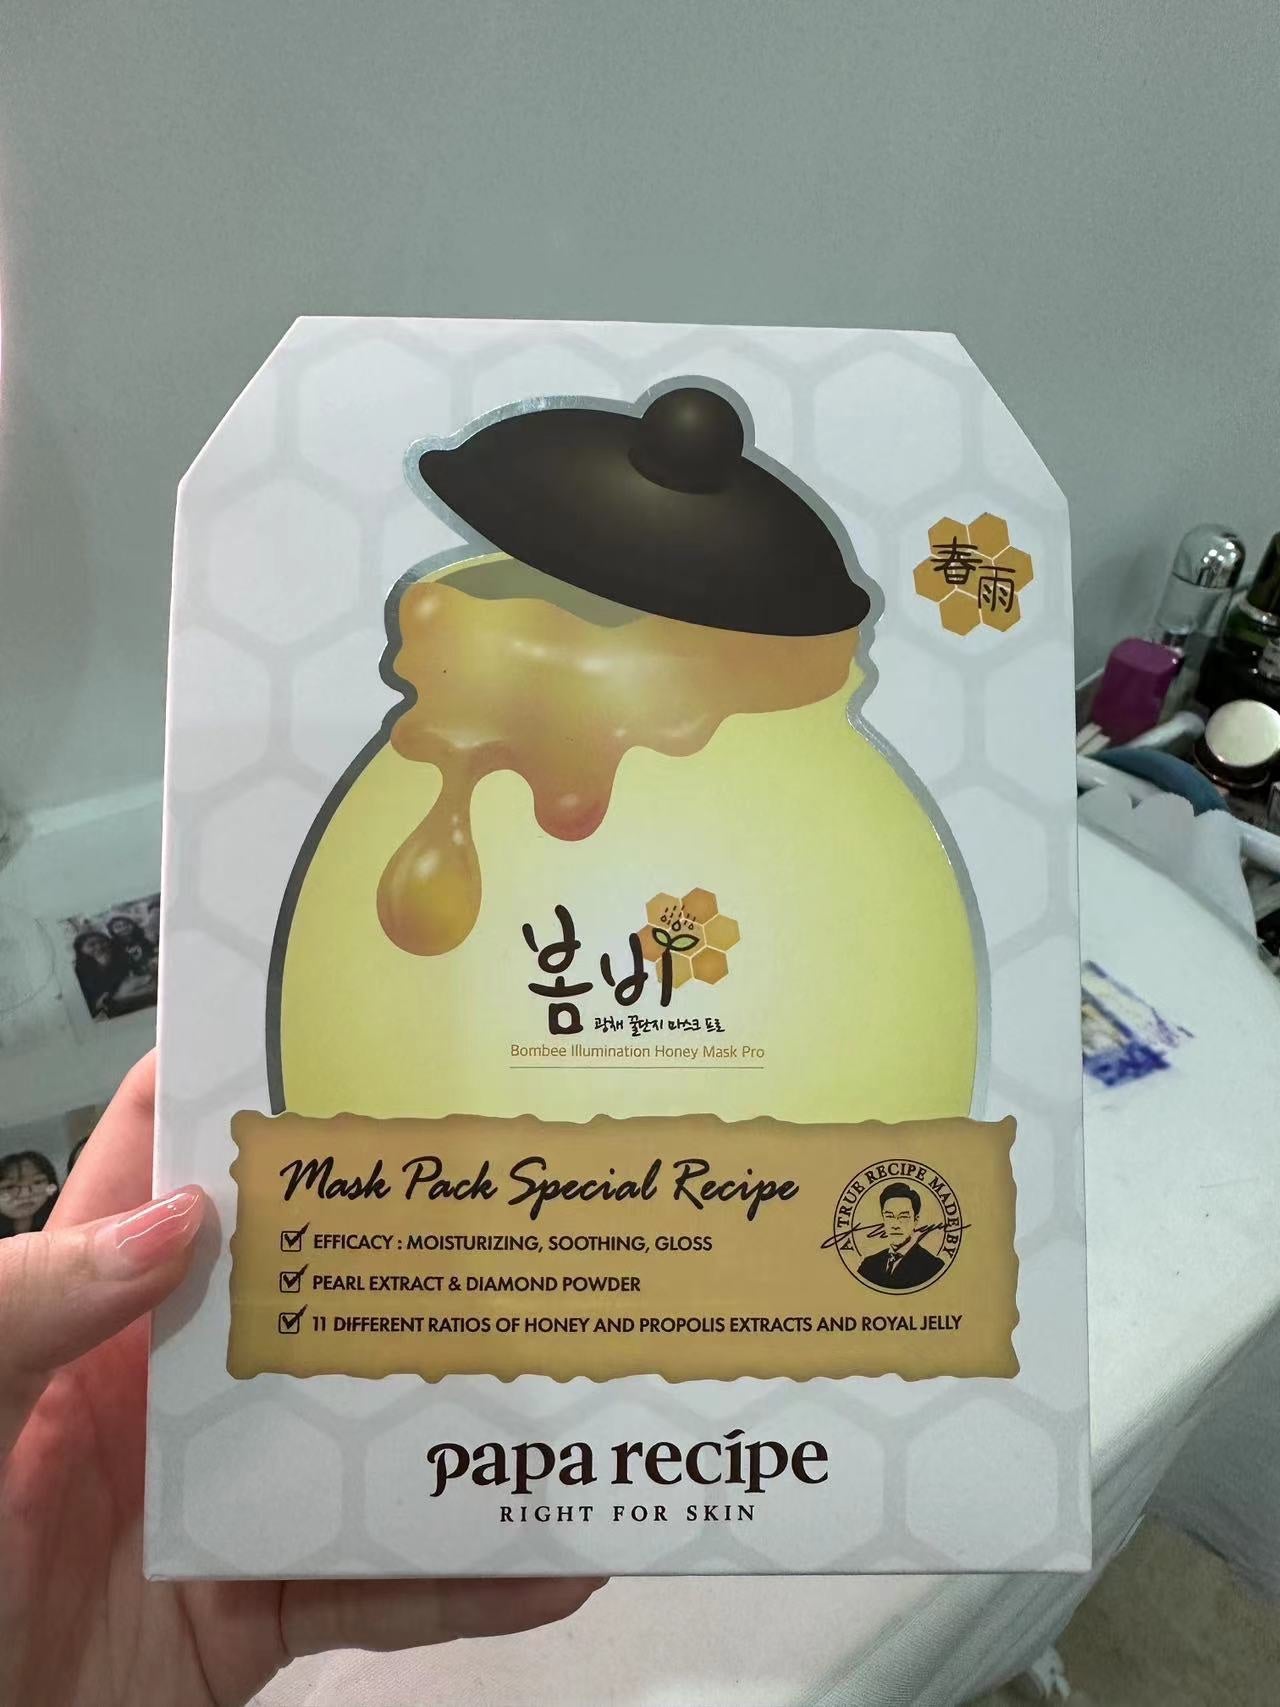 Papa Recipe 3.0 Bombee Illumination Honey Mask Pro 25g*10Pcs 春雨蜂蜜光彩面膜3.0